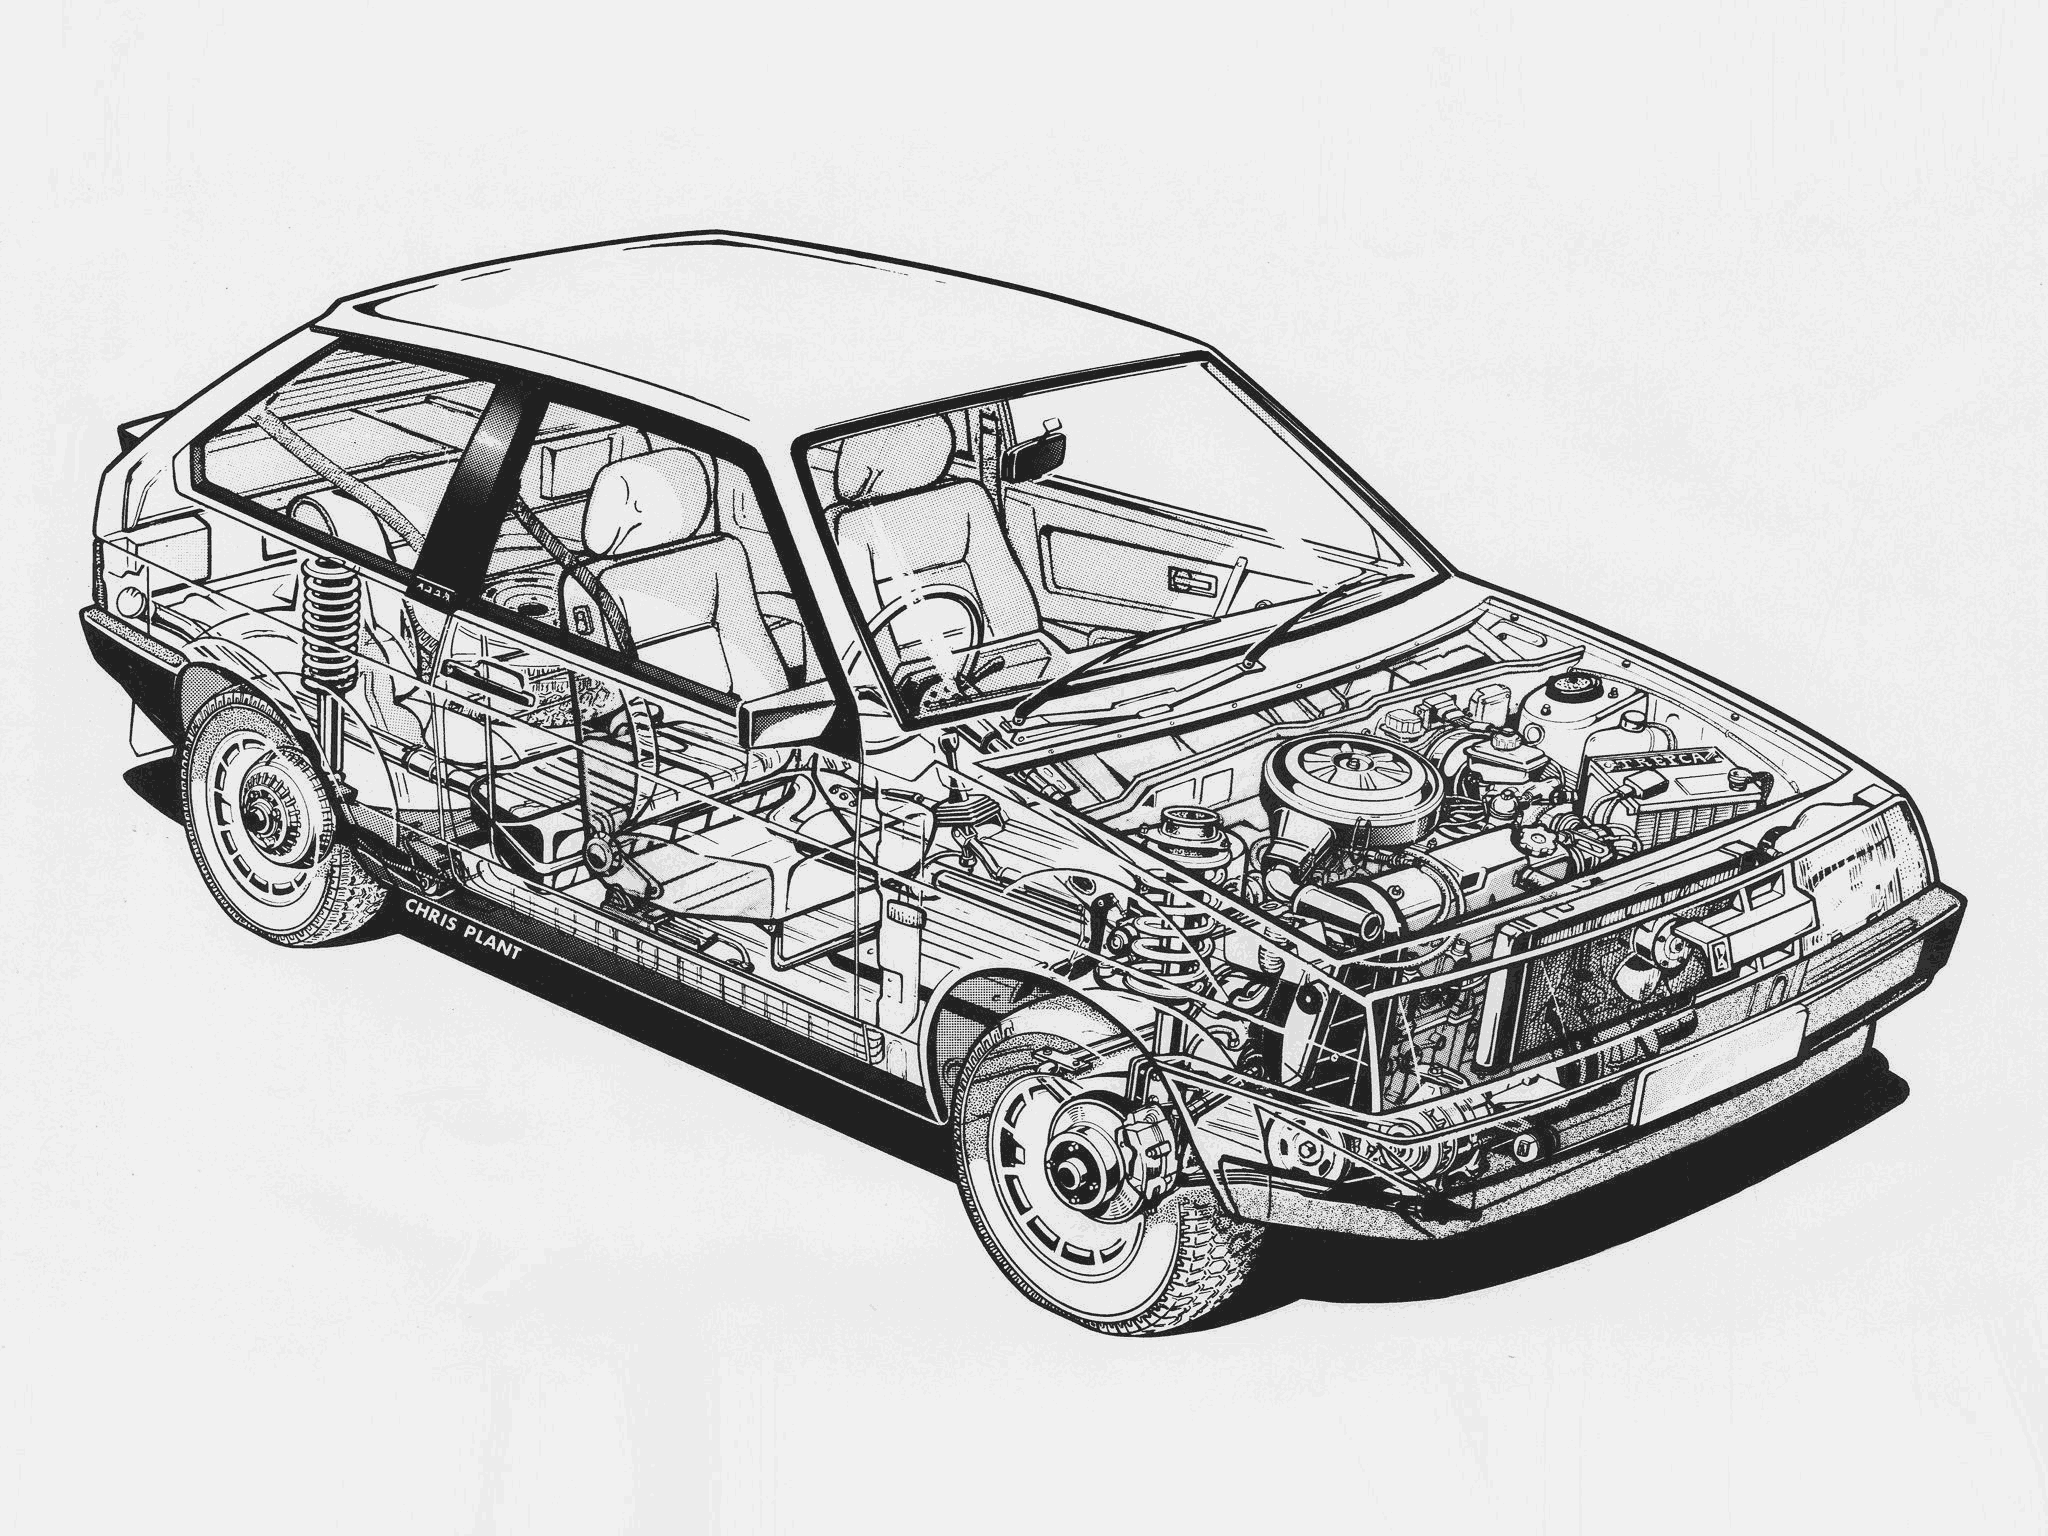 Lada Samara cutaway drawing